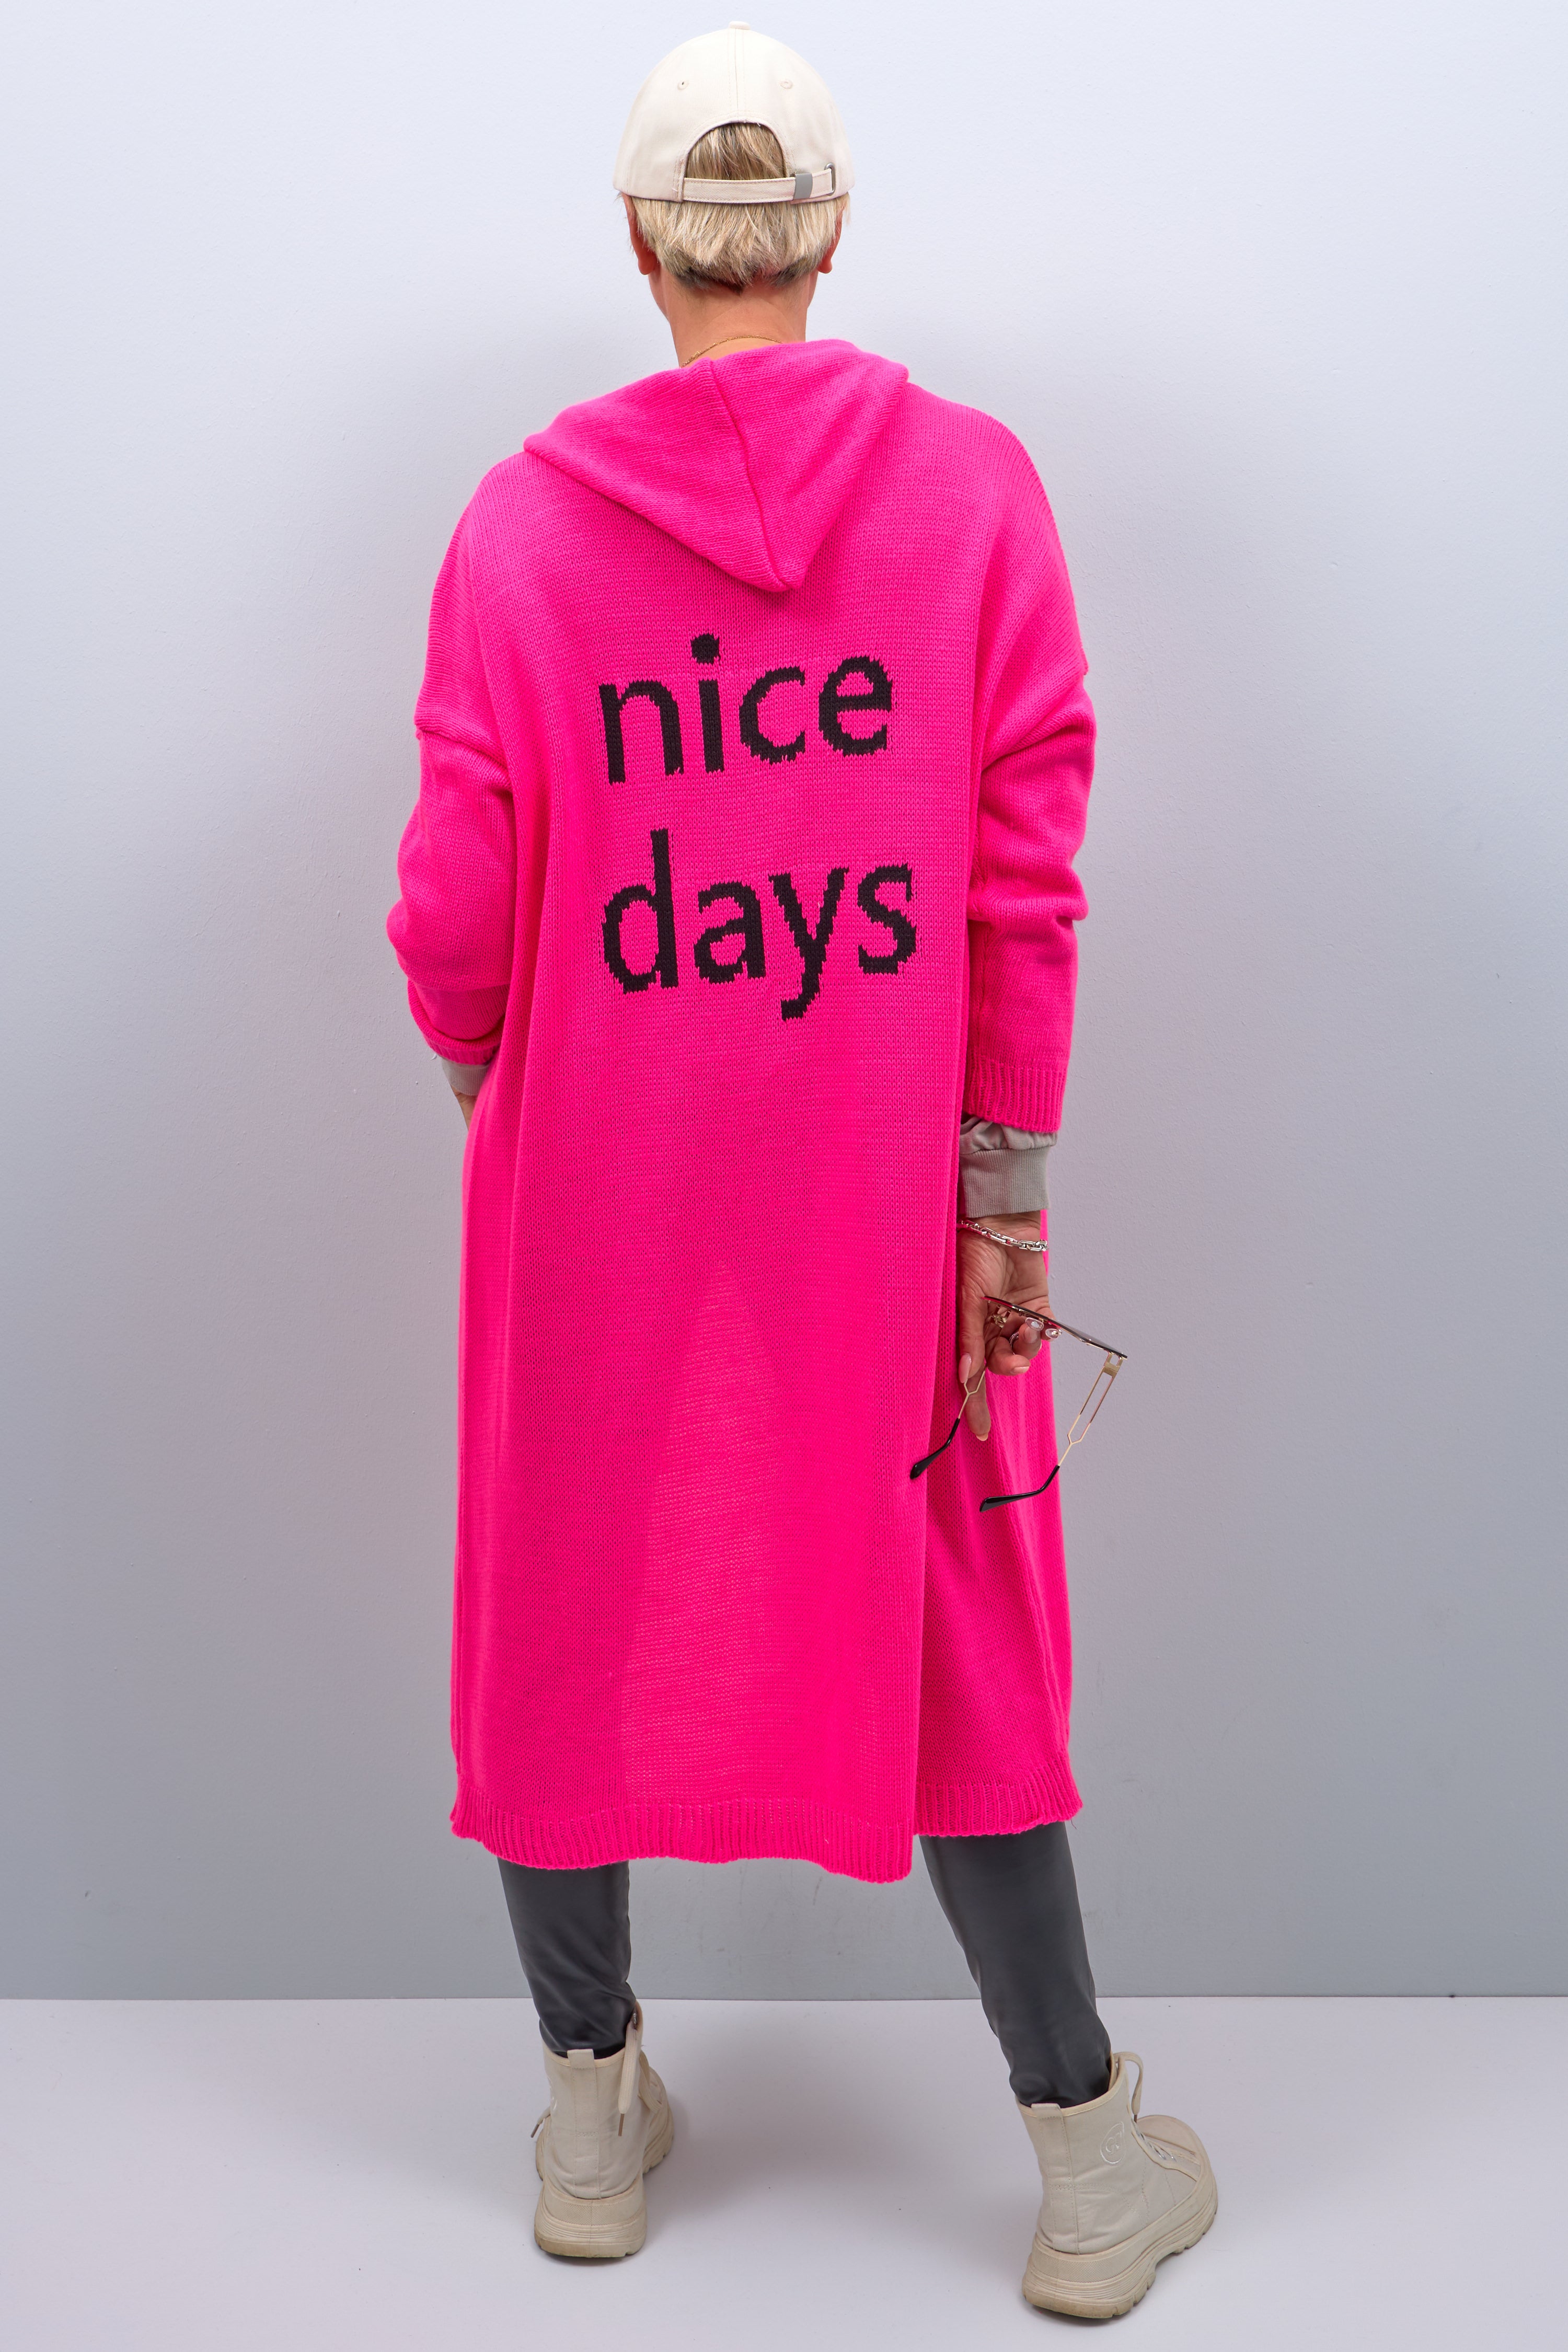 Lange Strickjacke mit Kapuze und Schriftzug "nice days", pink-schwarz